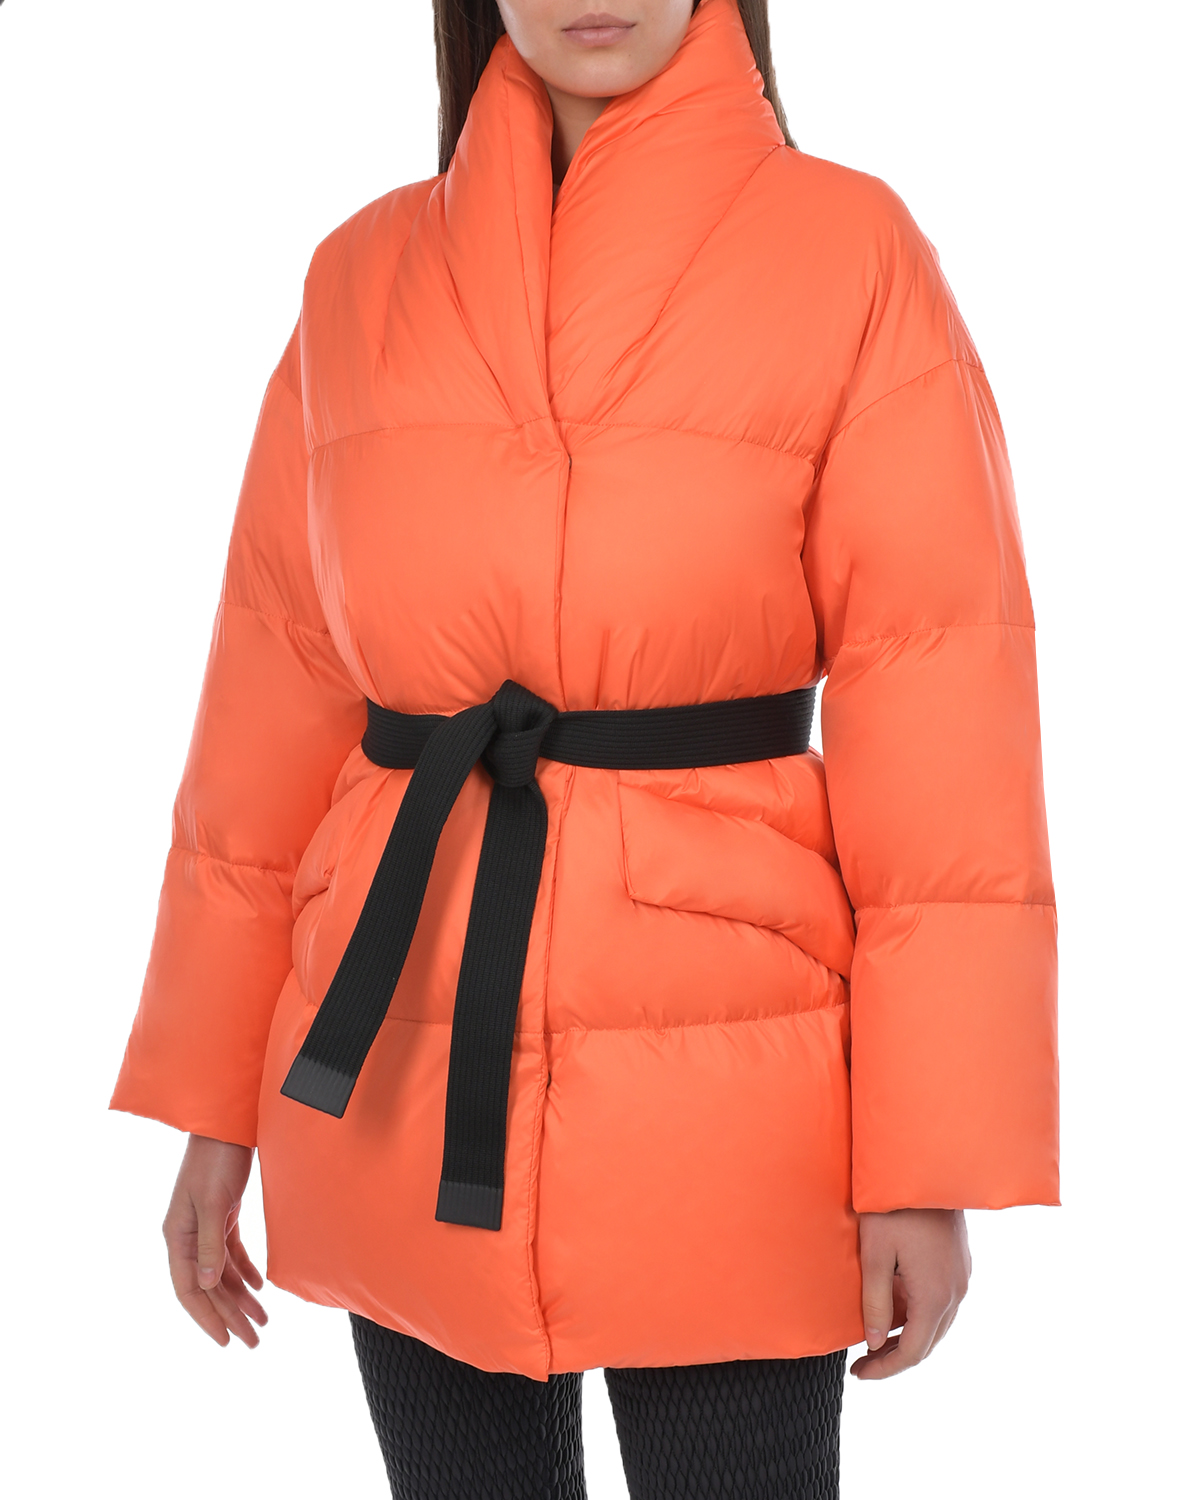 Оранжевая куртка с черным поясом Naumi, размер 36, цвет оранжевый - фото 10